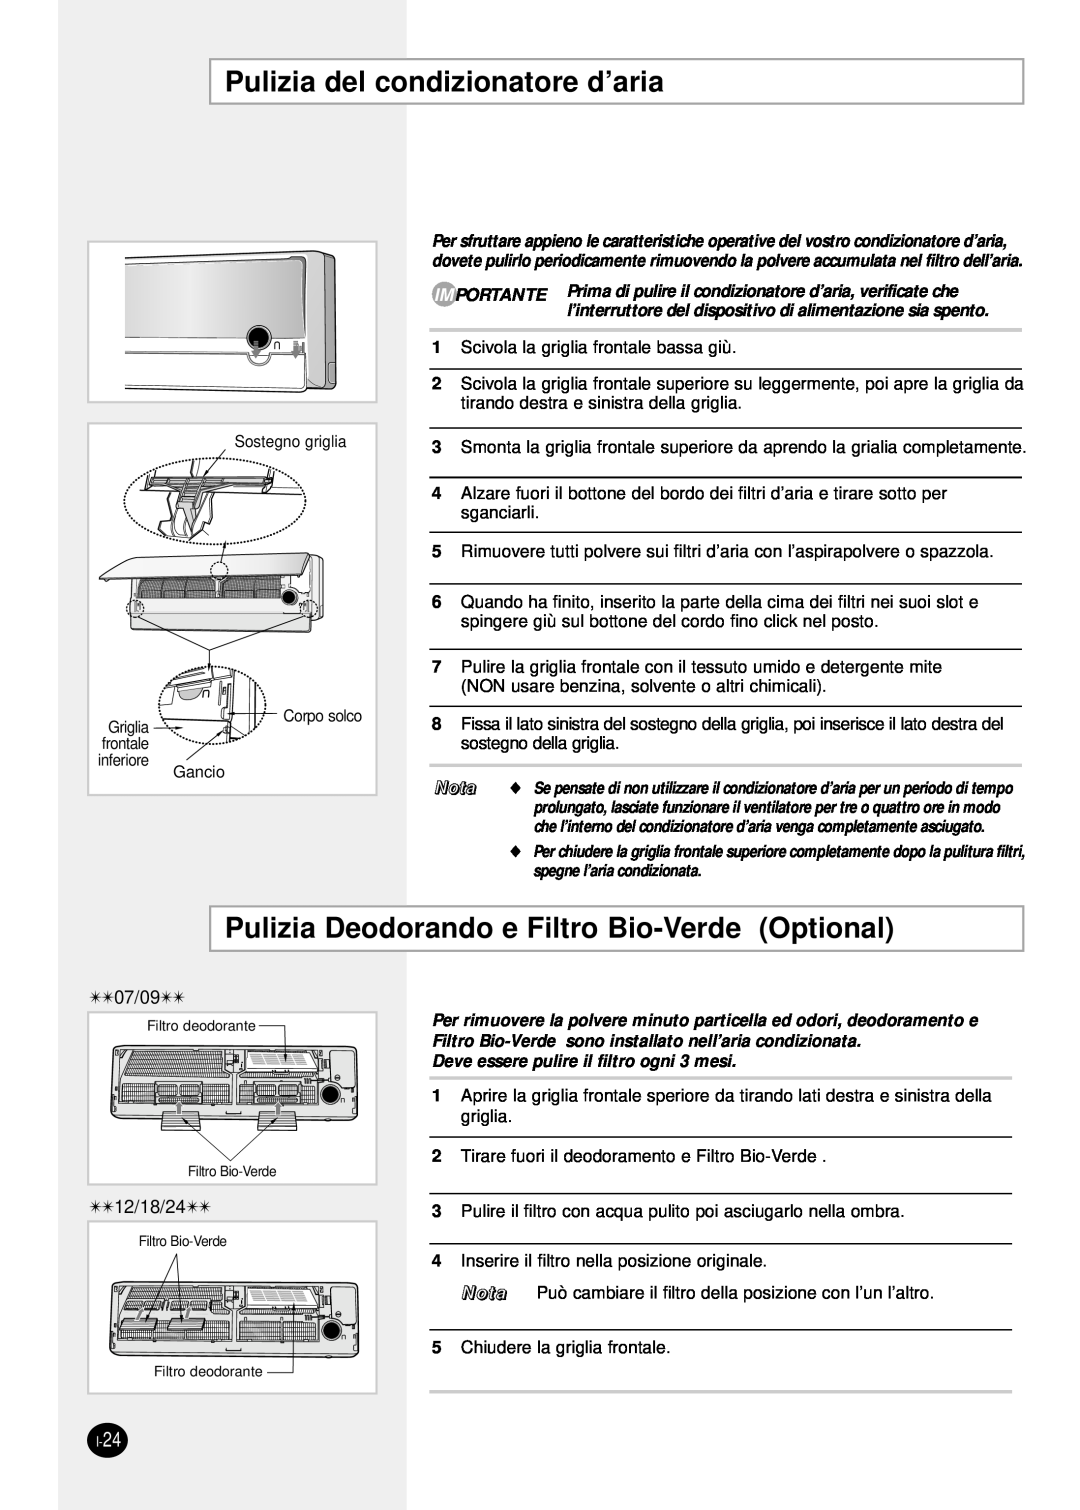 Samsung SH12ZPG/SER, SH24TP6 manual Pulizia del condizionatore d’aria, Pulizia Deodorando e Filtro Bio-Verde Optional, Nota 